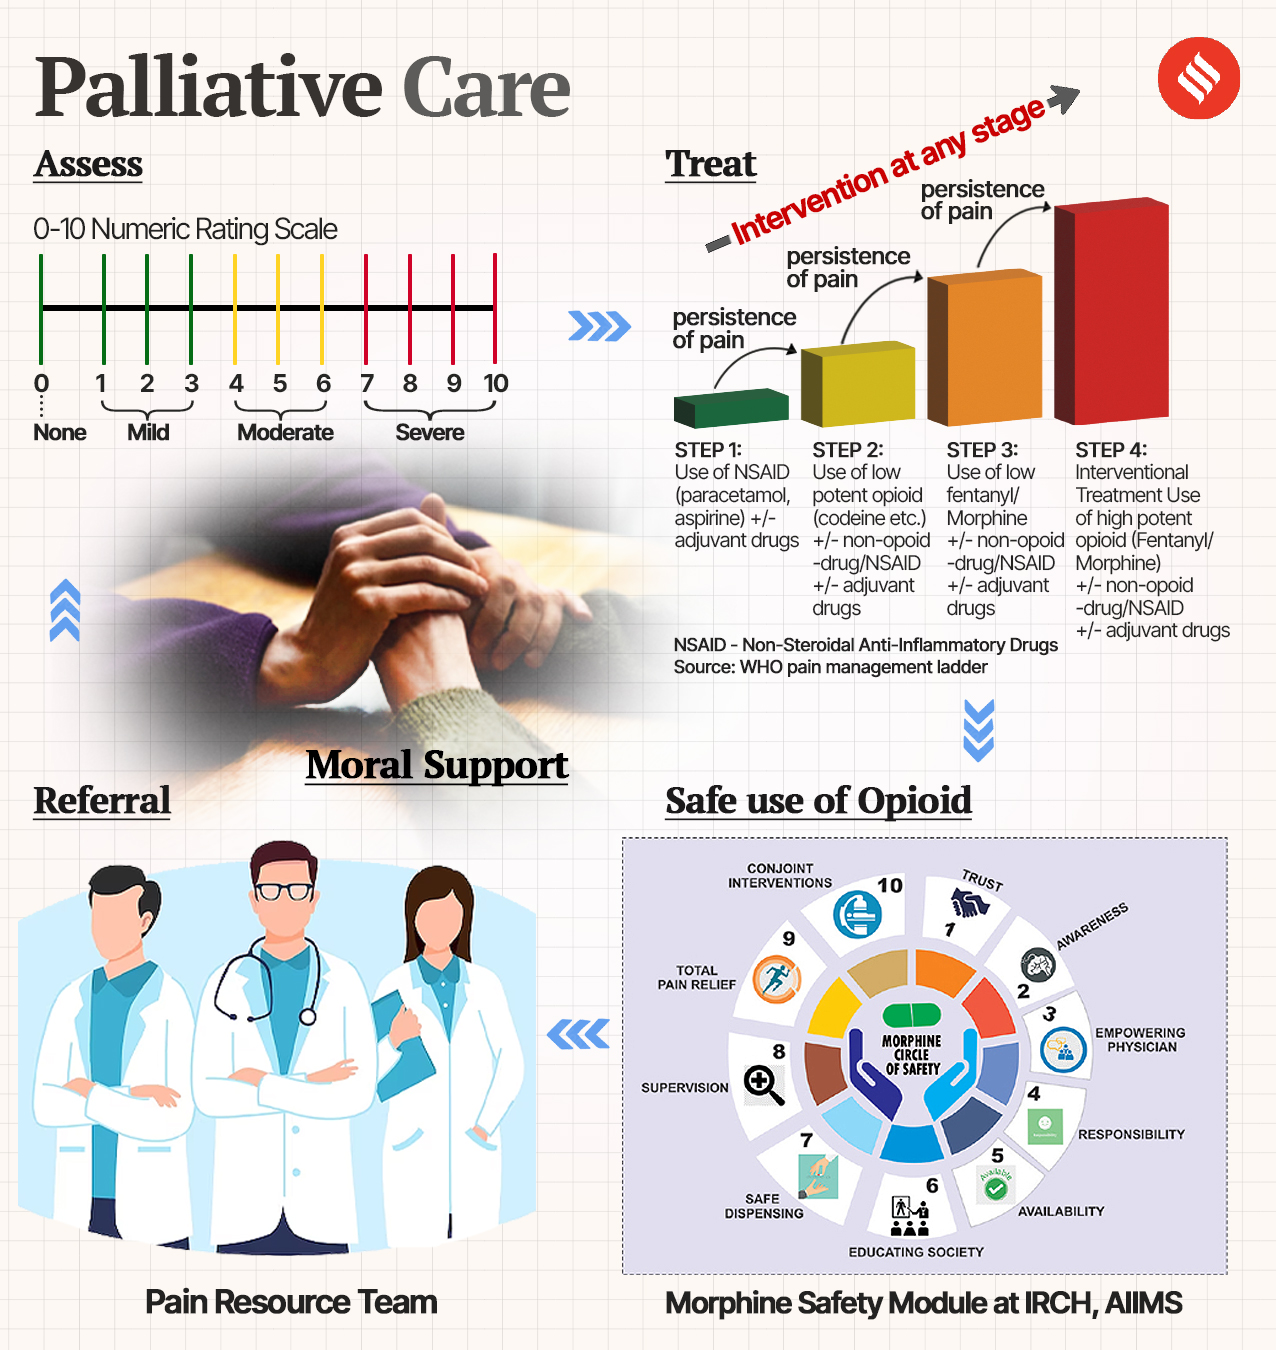 cancer, palliative care